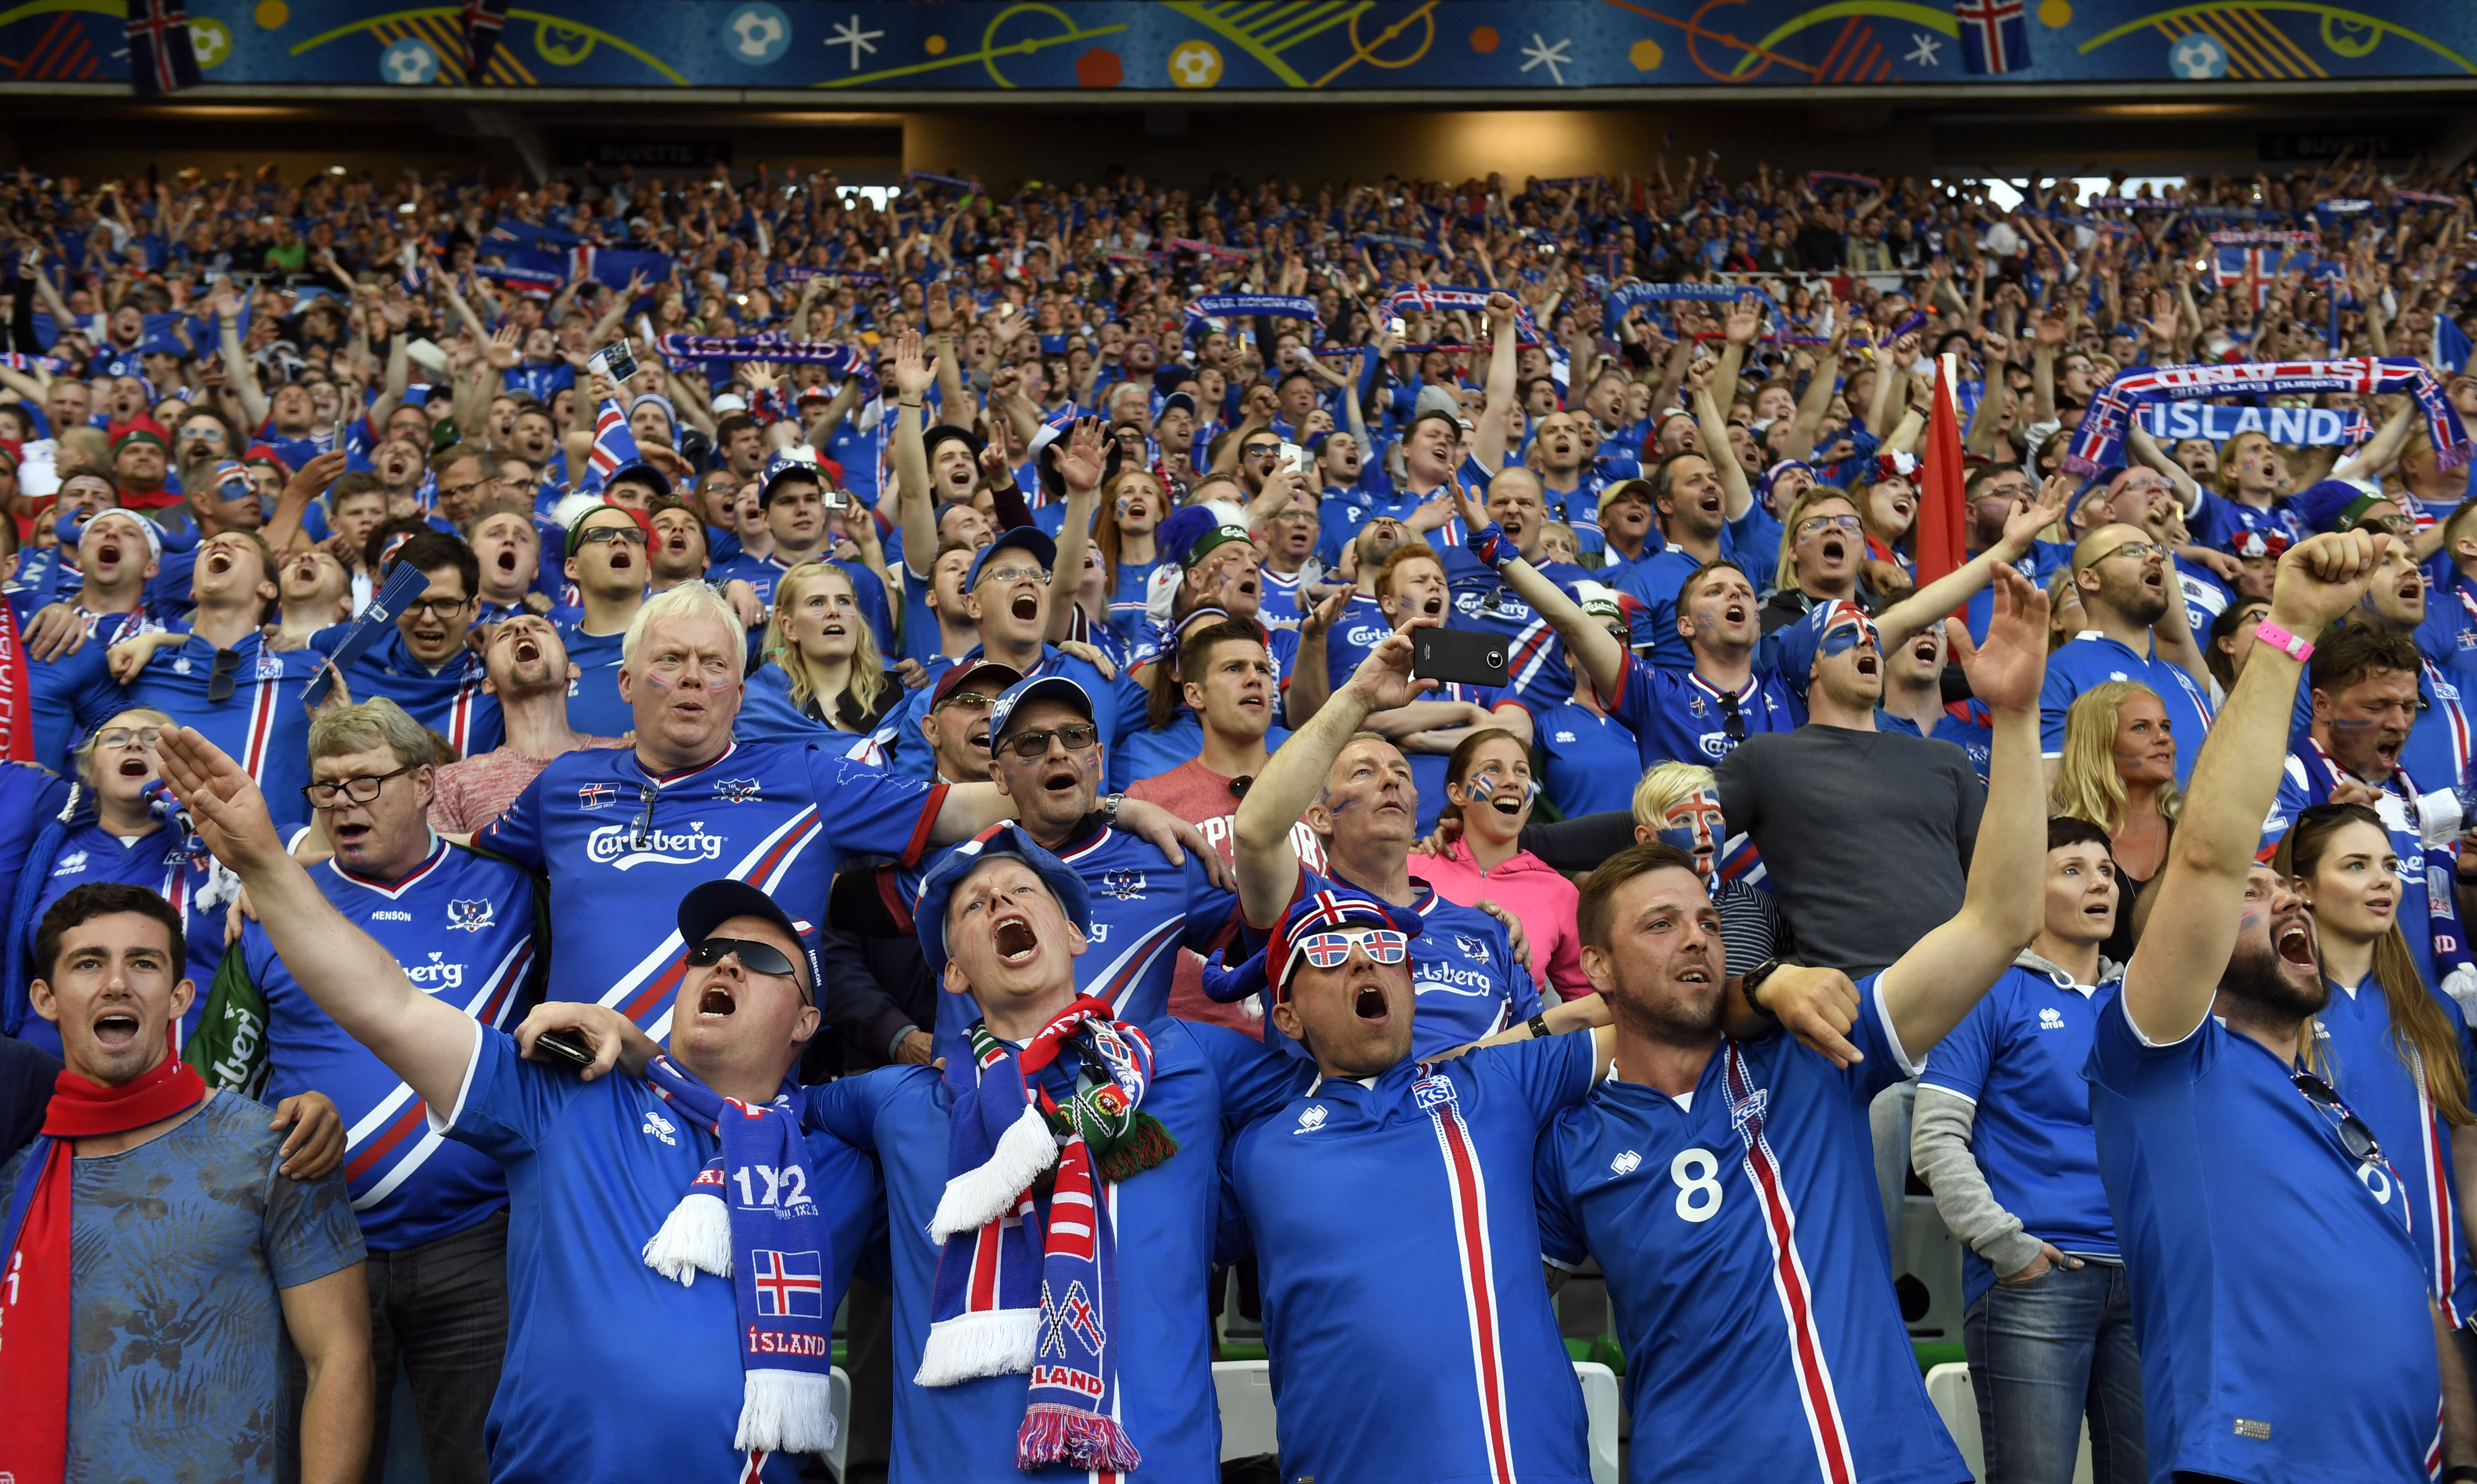 Amit Izland a fociban varázsol, az tényleg egy csoda